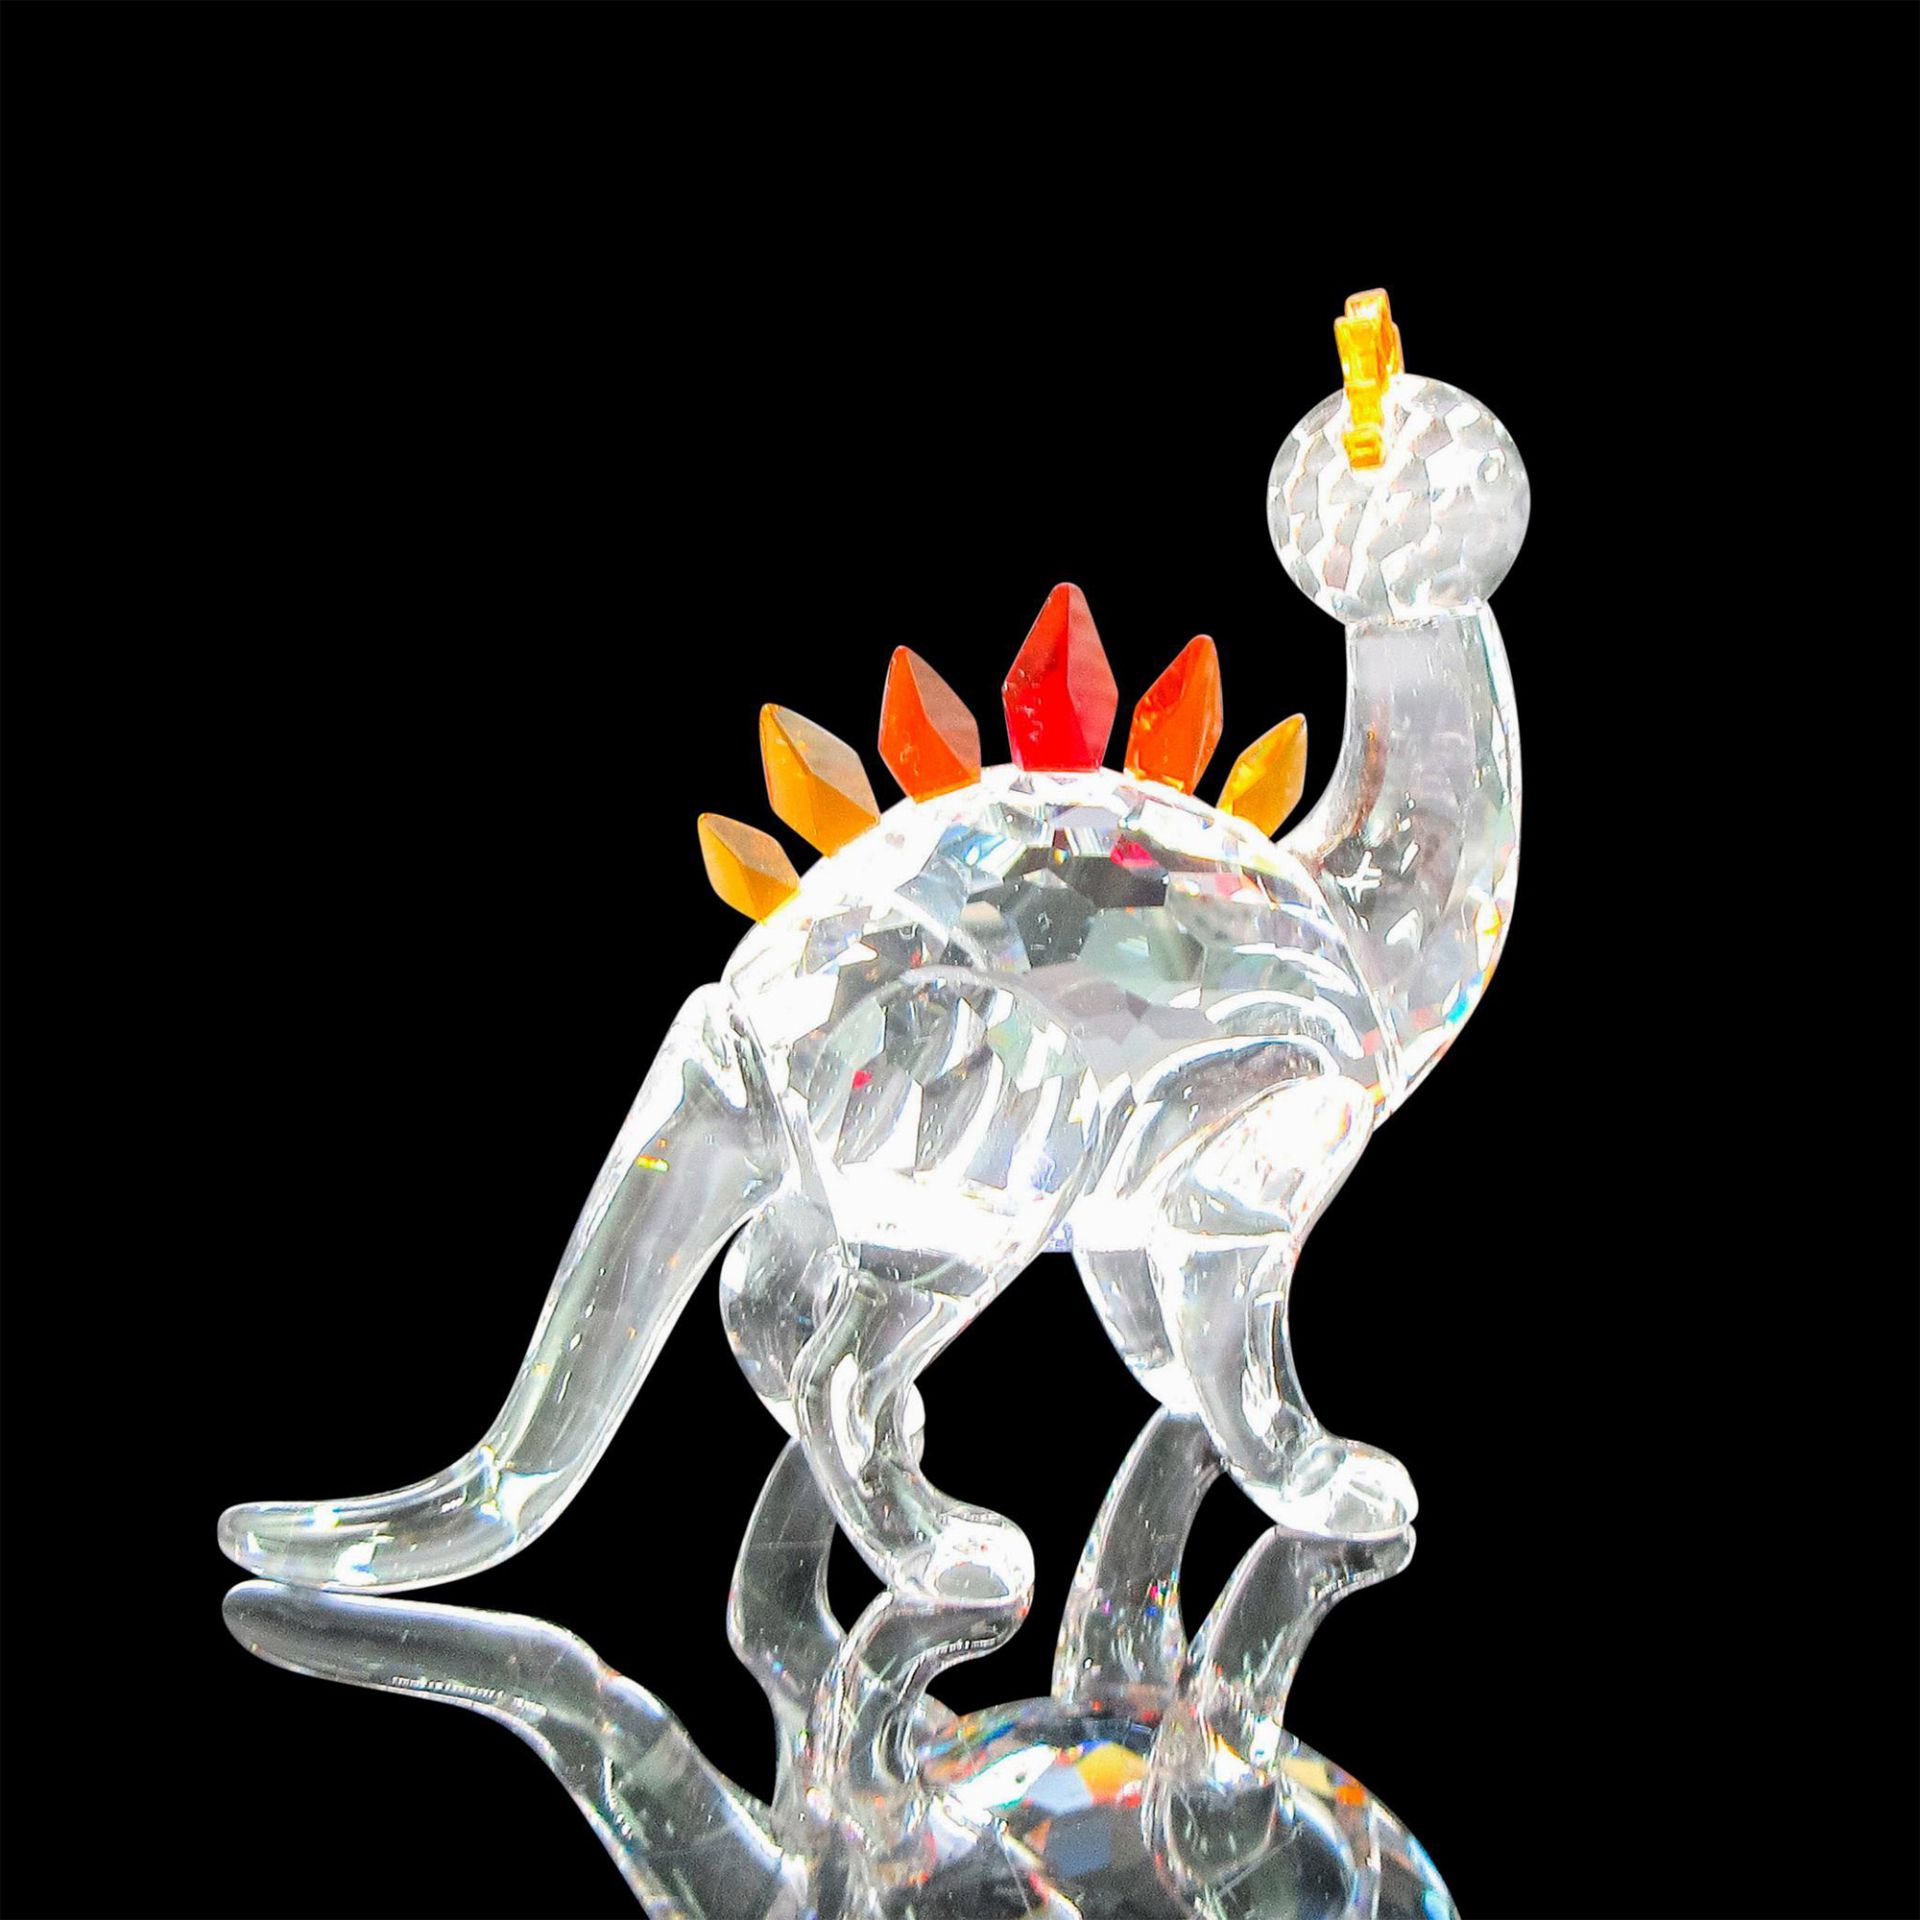 Swarovski Crystal Figurine, Dino the Dinosaur - Image 2 of 4